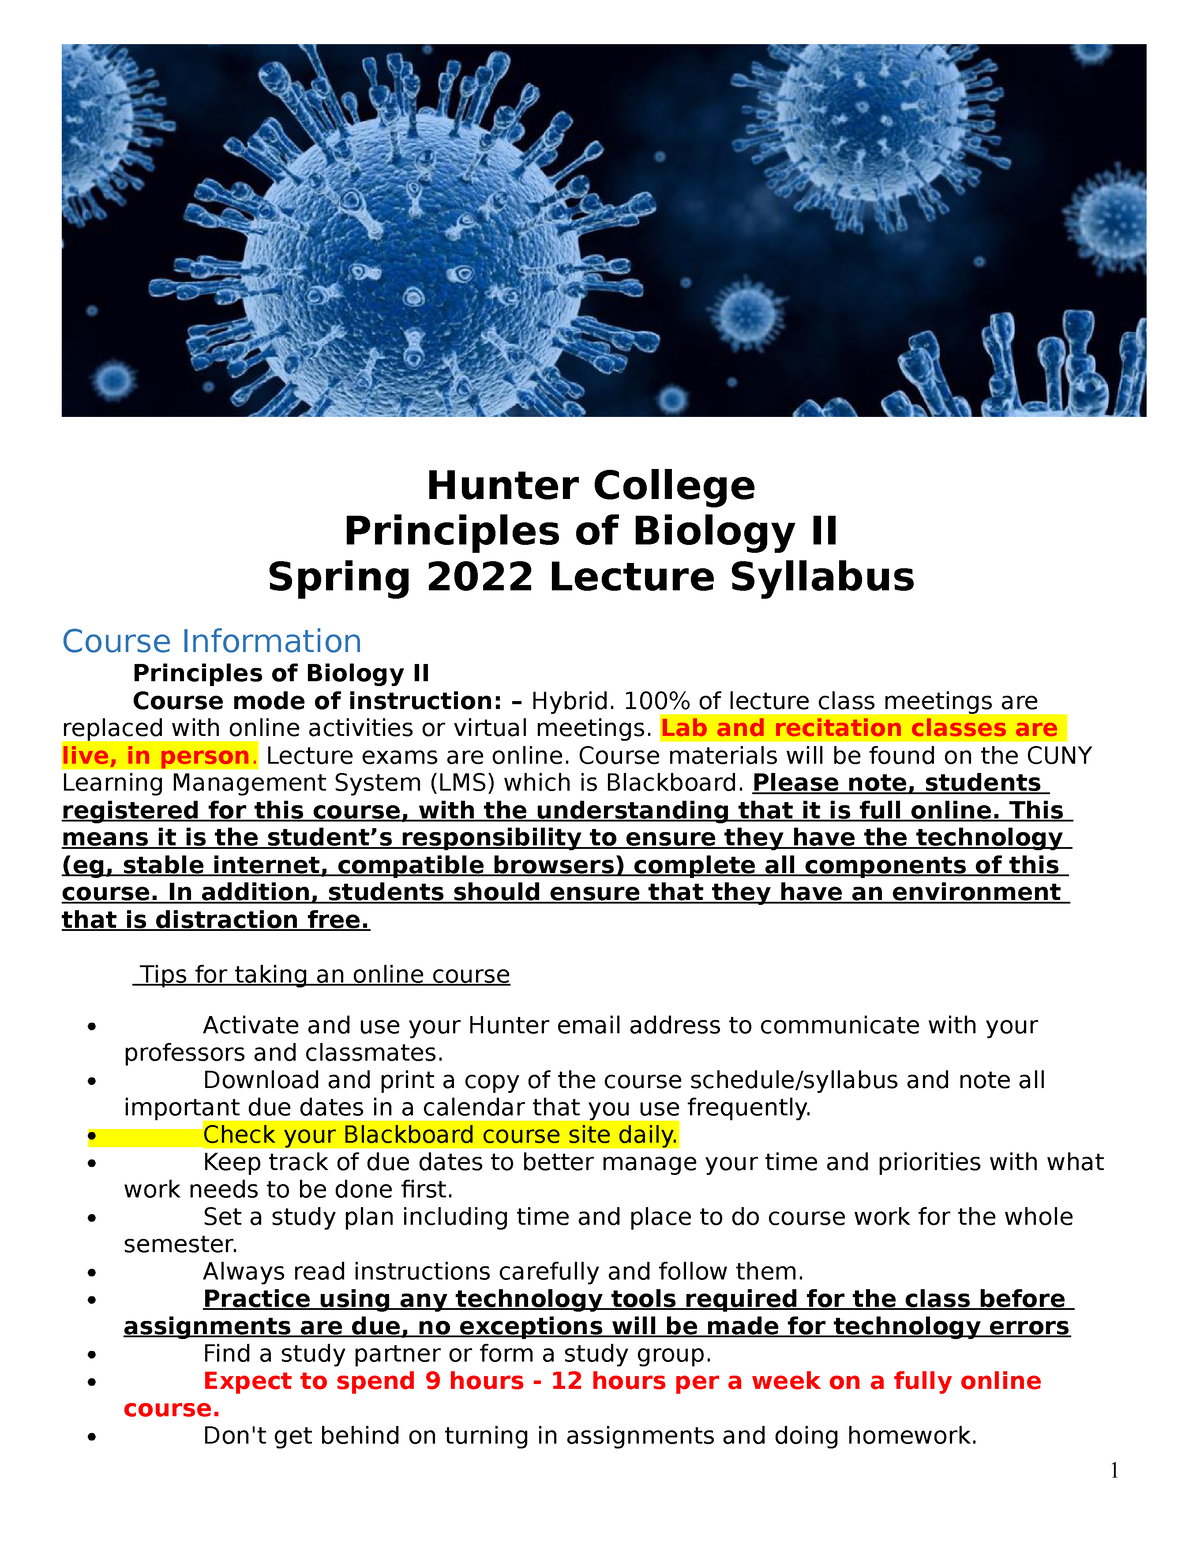 Hunter College Schedule Spring 2022 Obb_U0J-Oi48Sm